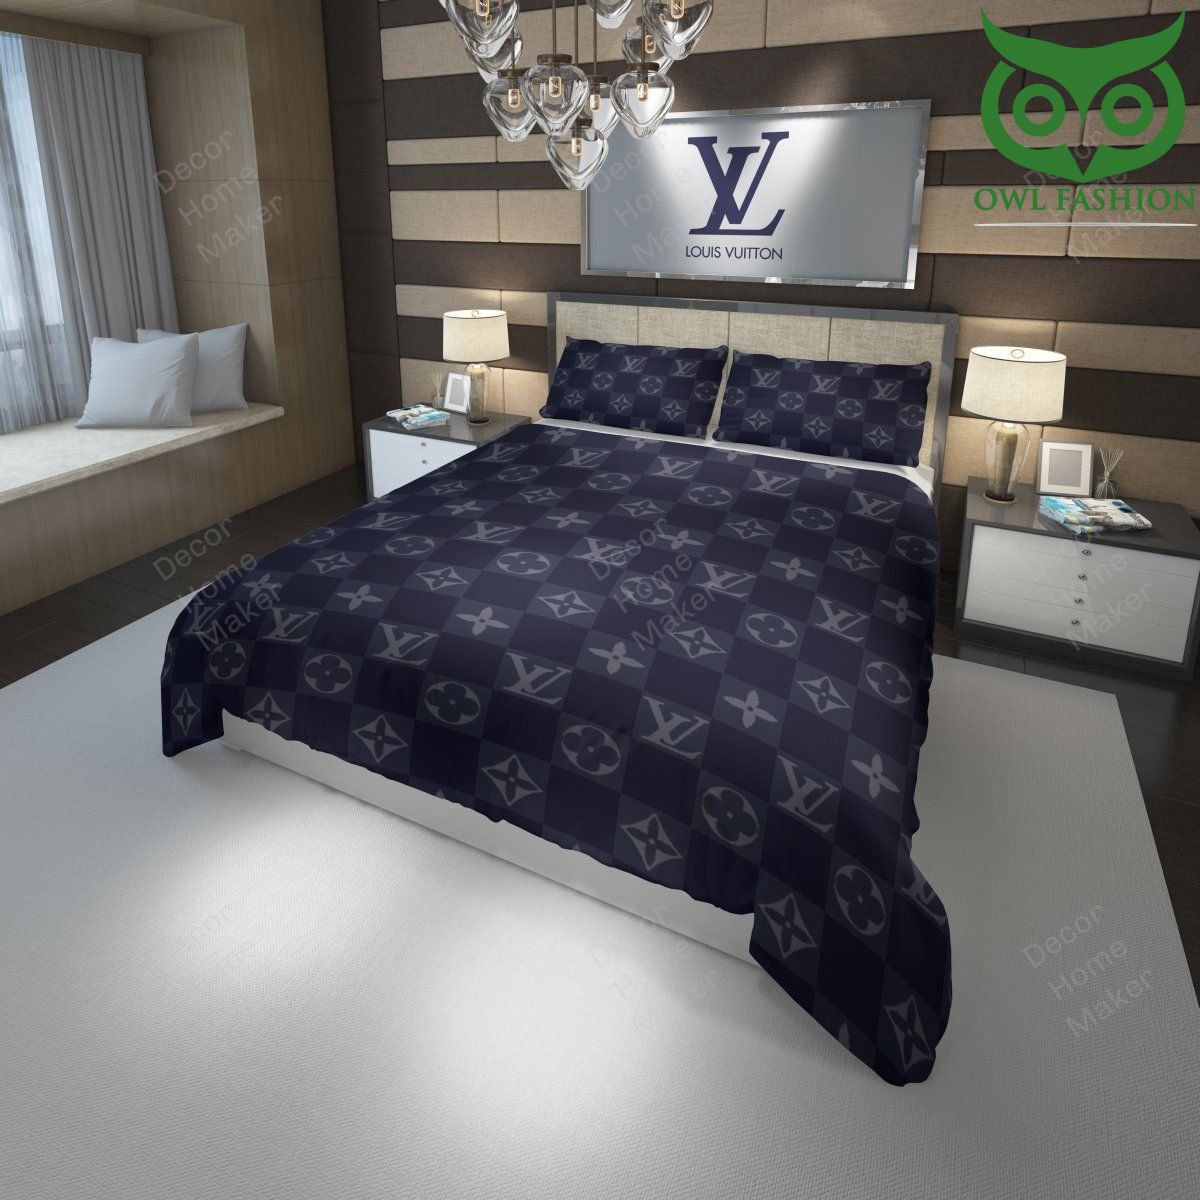 Louis Vuitton navy caro pattern luxury bedding set